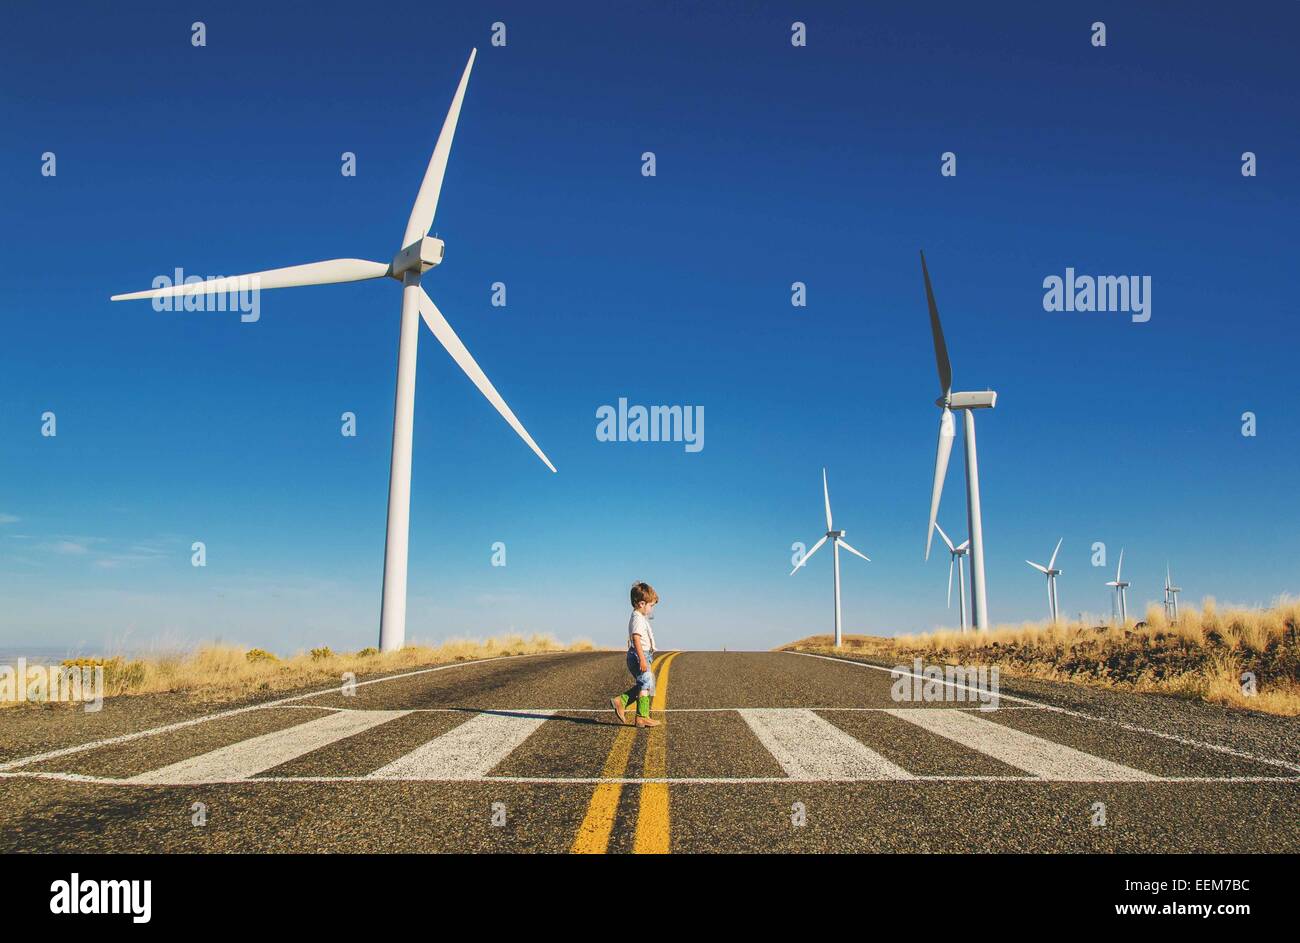 Boy crossing a road near a wind farm, USA Stock Photo